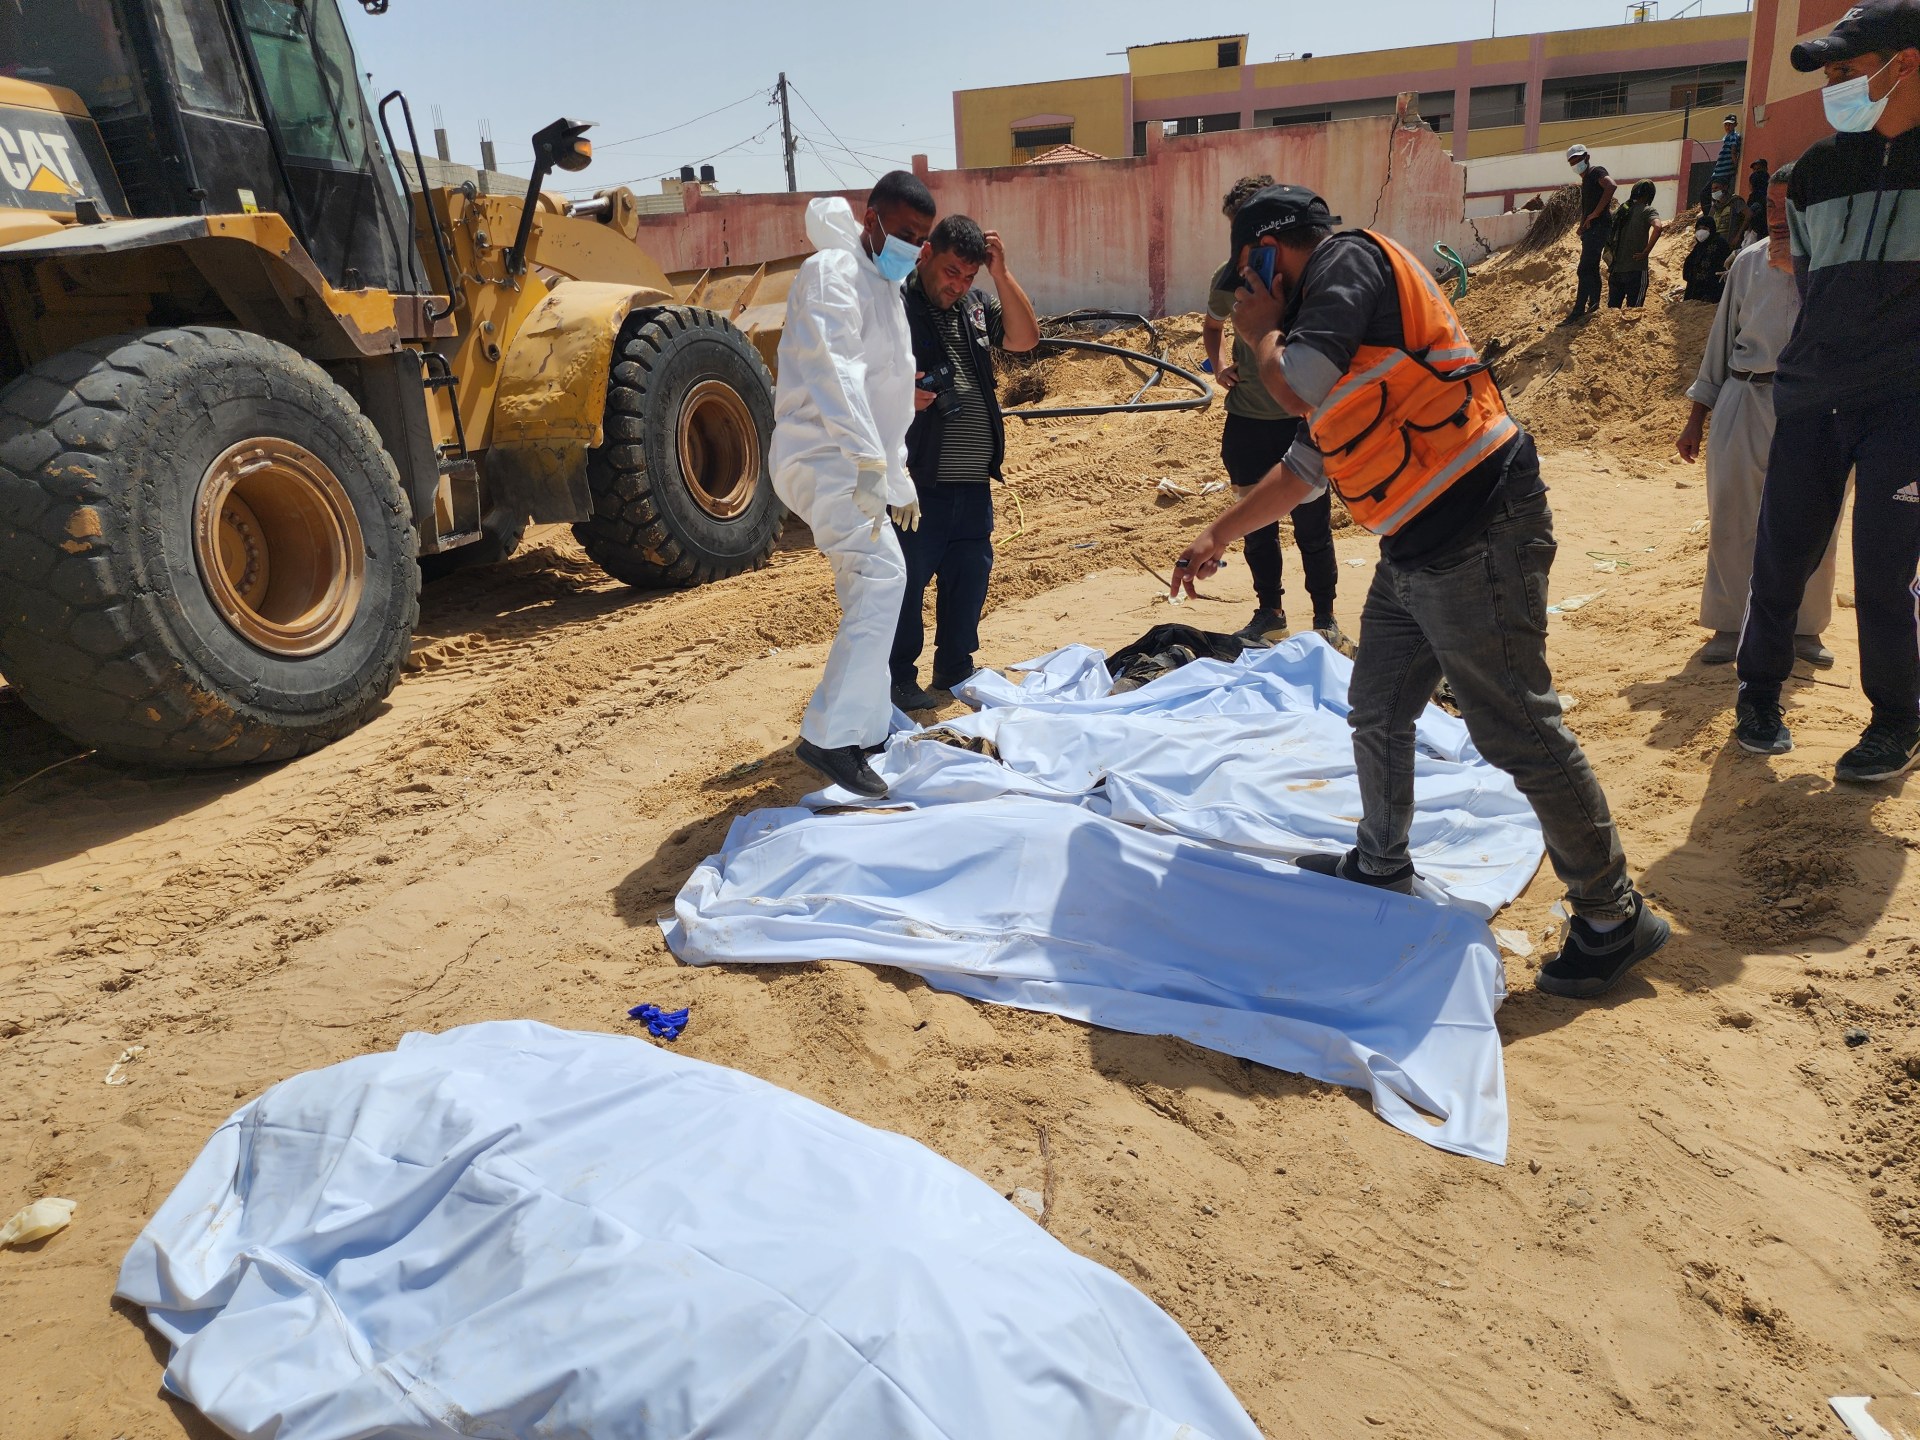 Beweise für Folter, da fast 400 Leichen in Massengräbern in Gaza gefunden wurden |  Nachrichten über den israelischen Krieg gegen Gaza